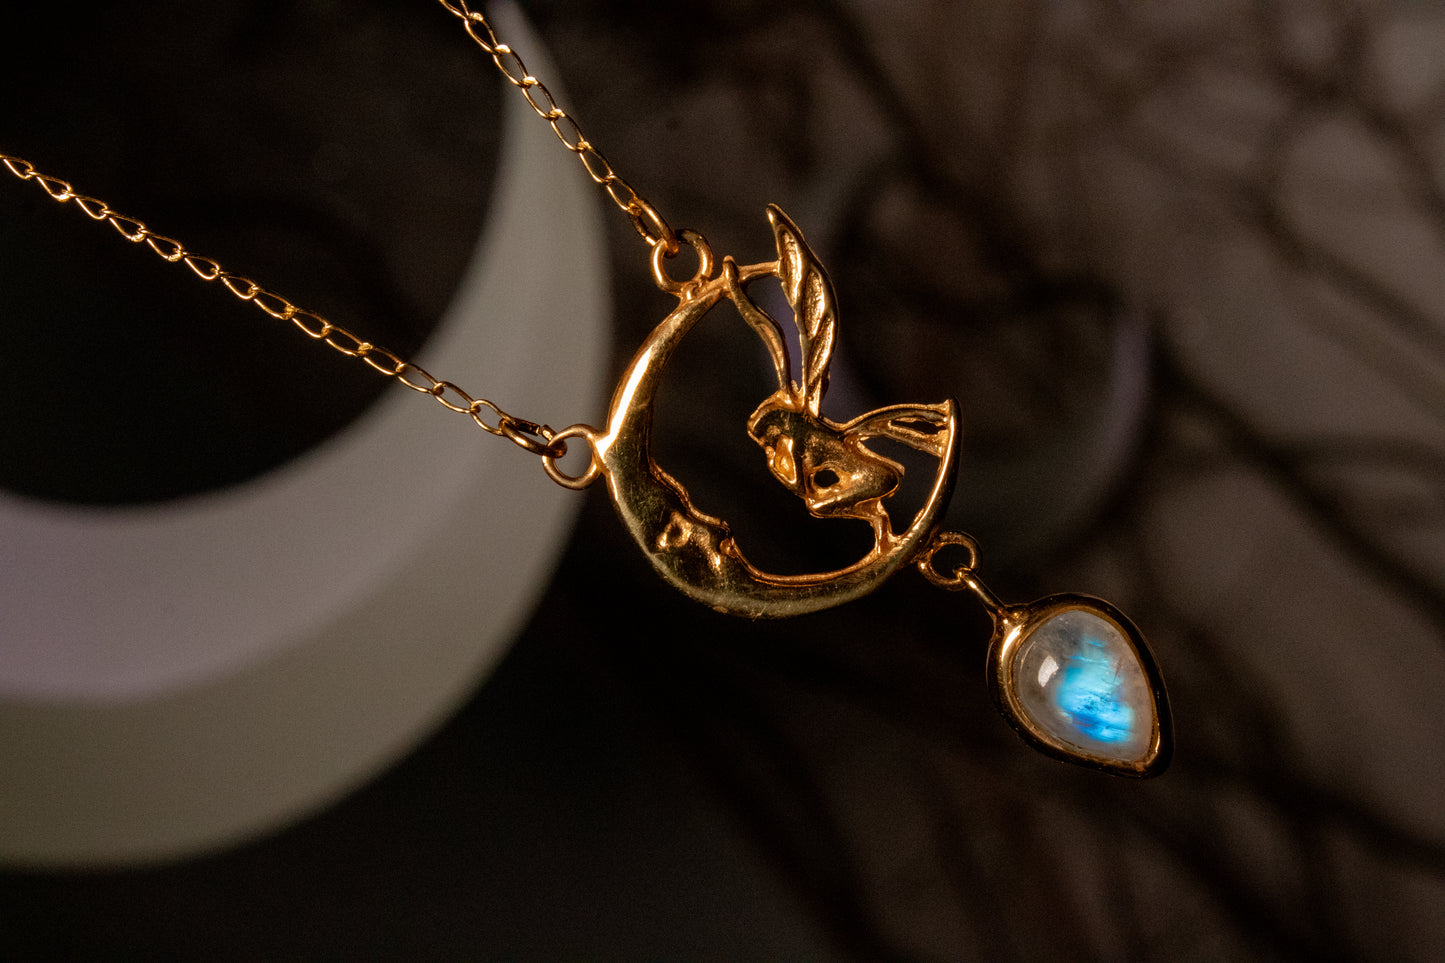 Yatziri. Moonstone necklace